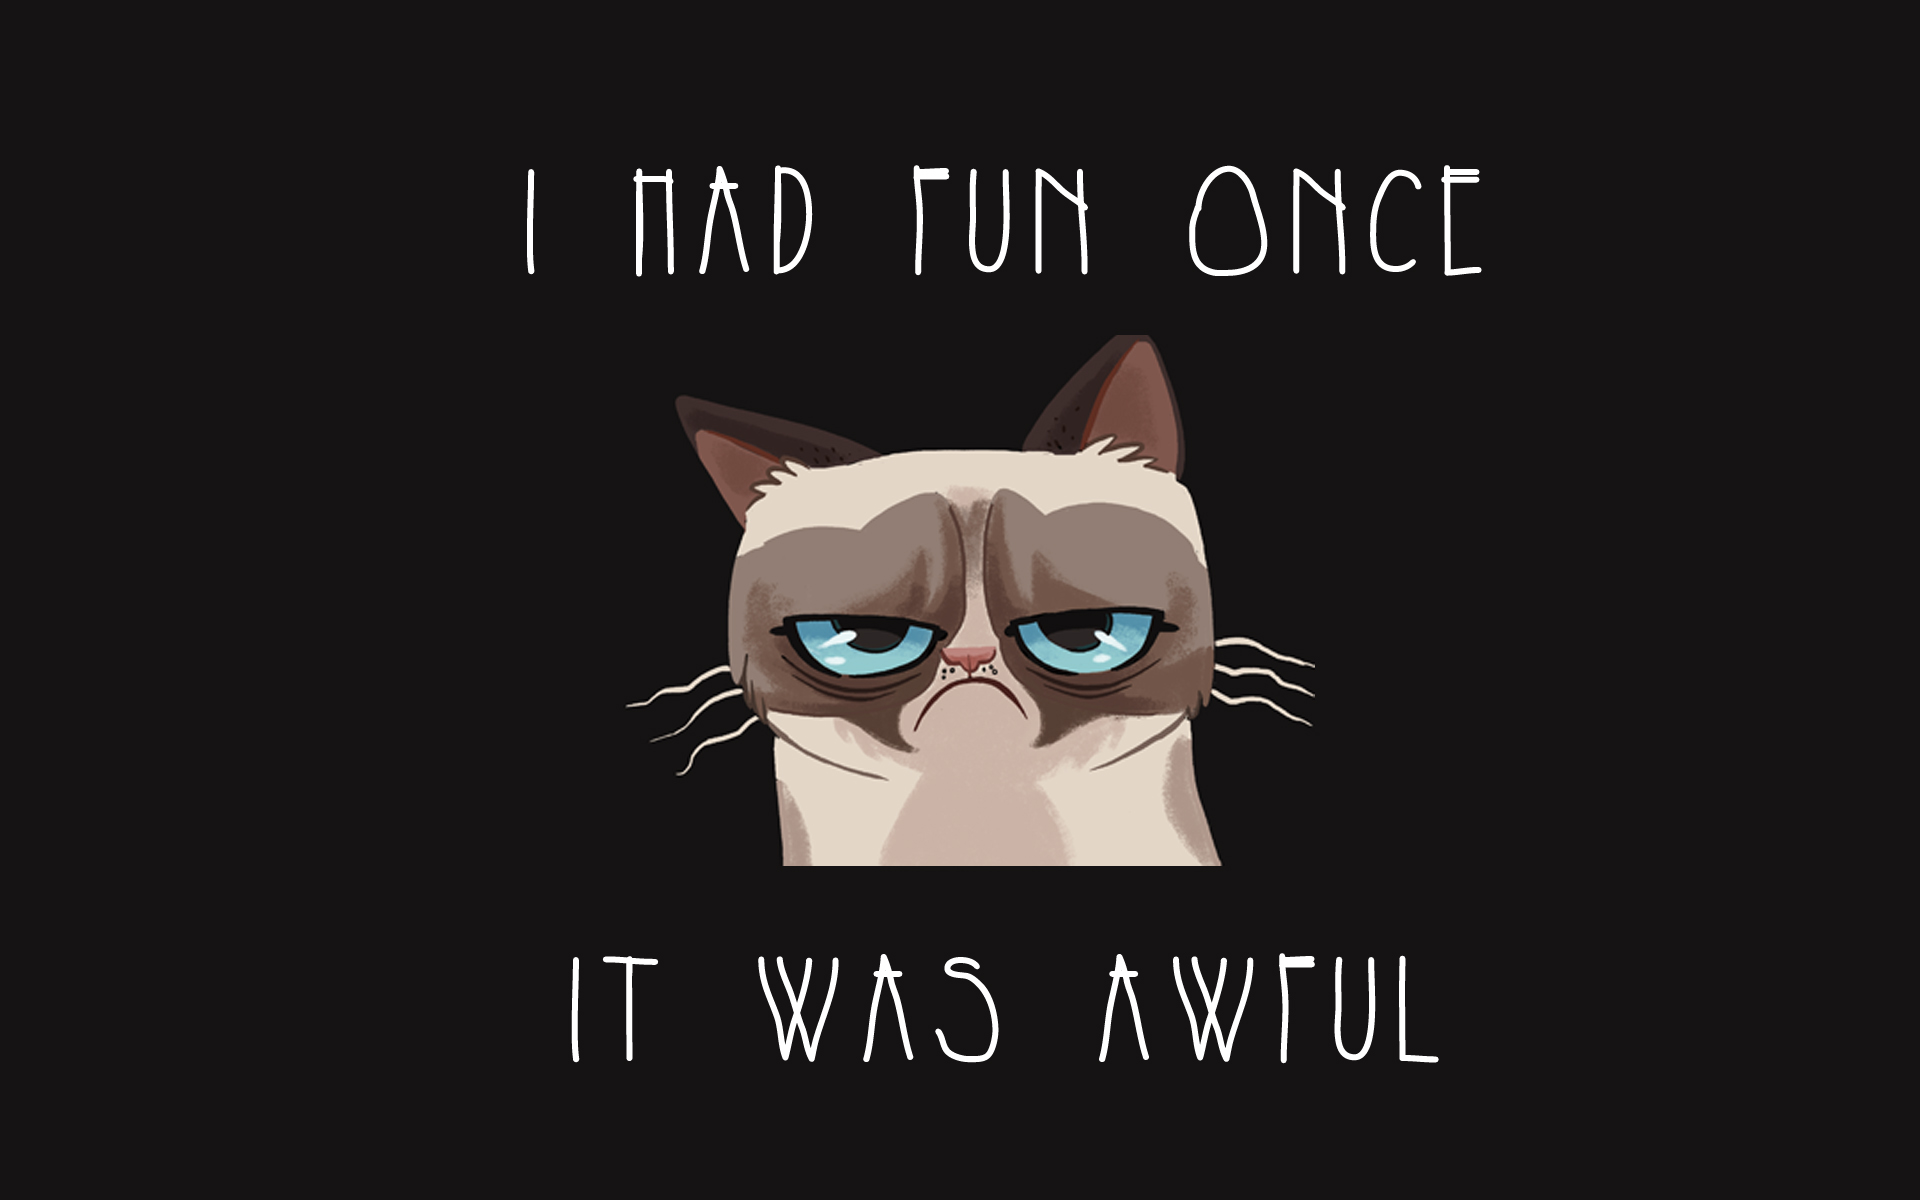 grumpy cat quotes tumblr